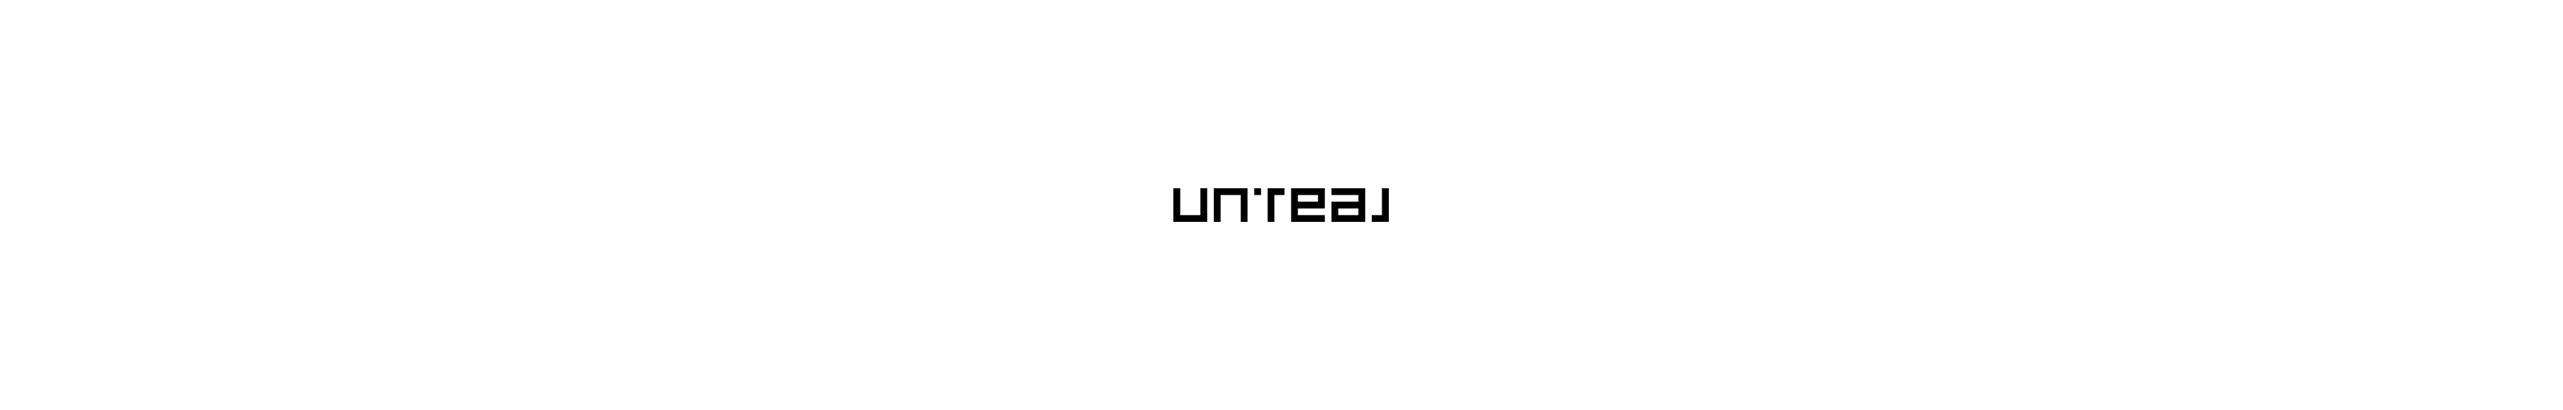 UN-REAL STUDIO's profile banner